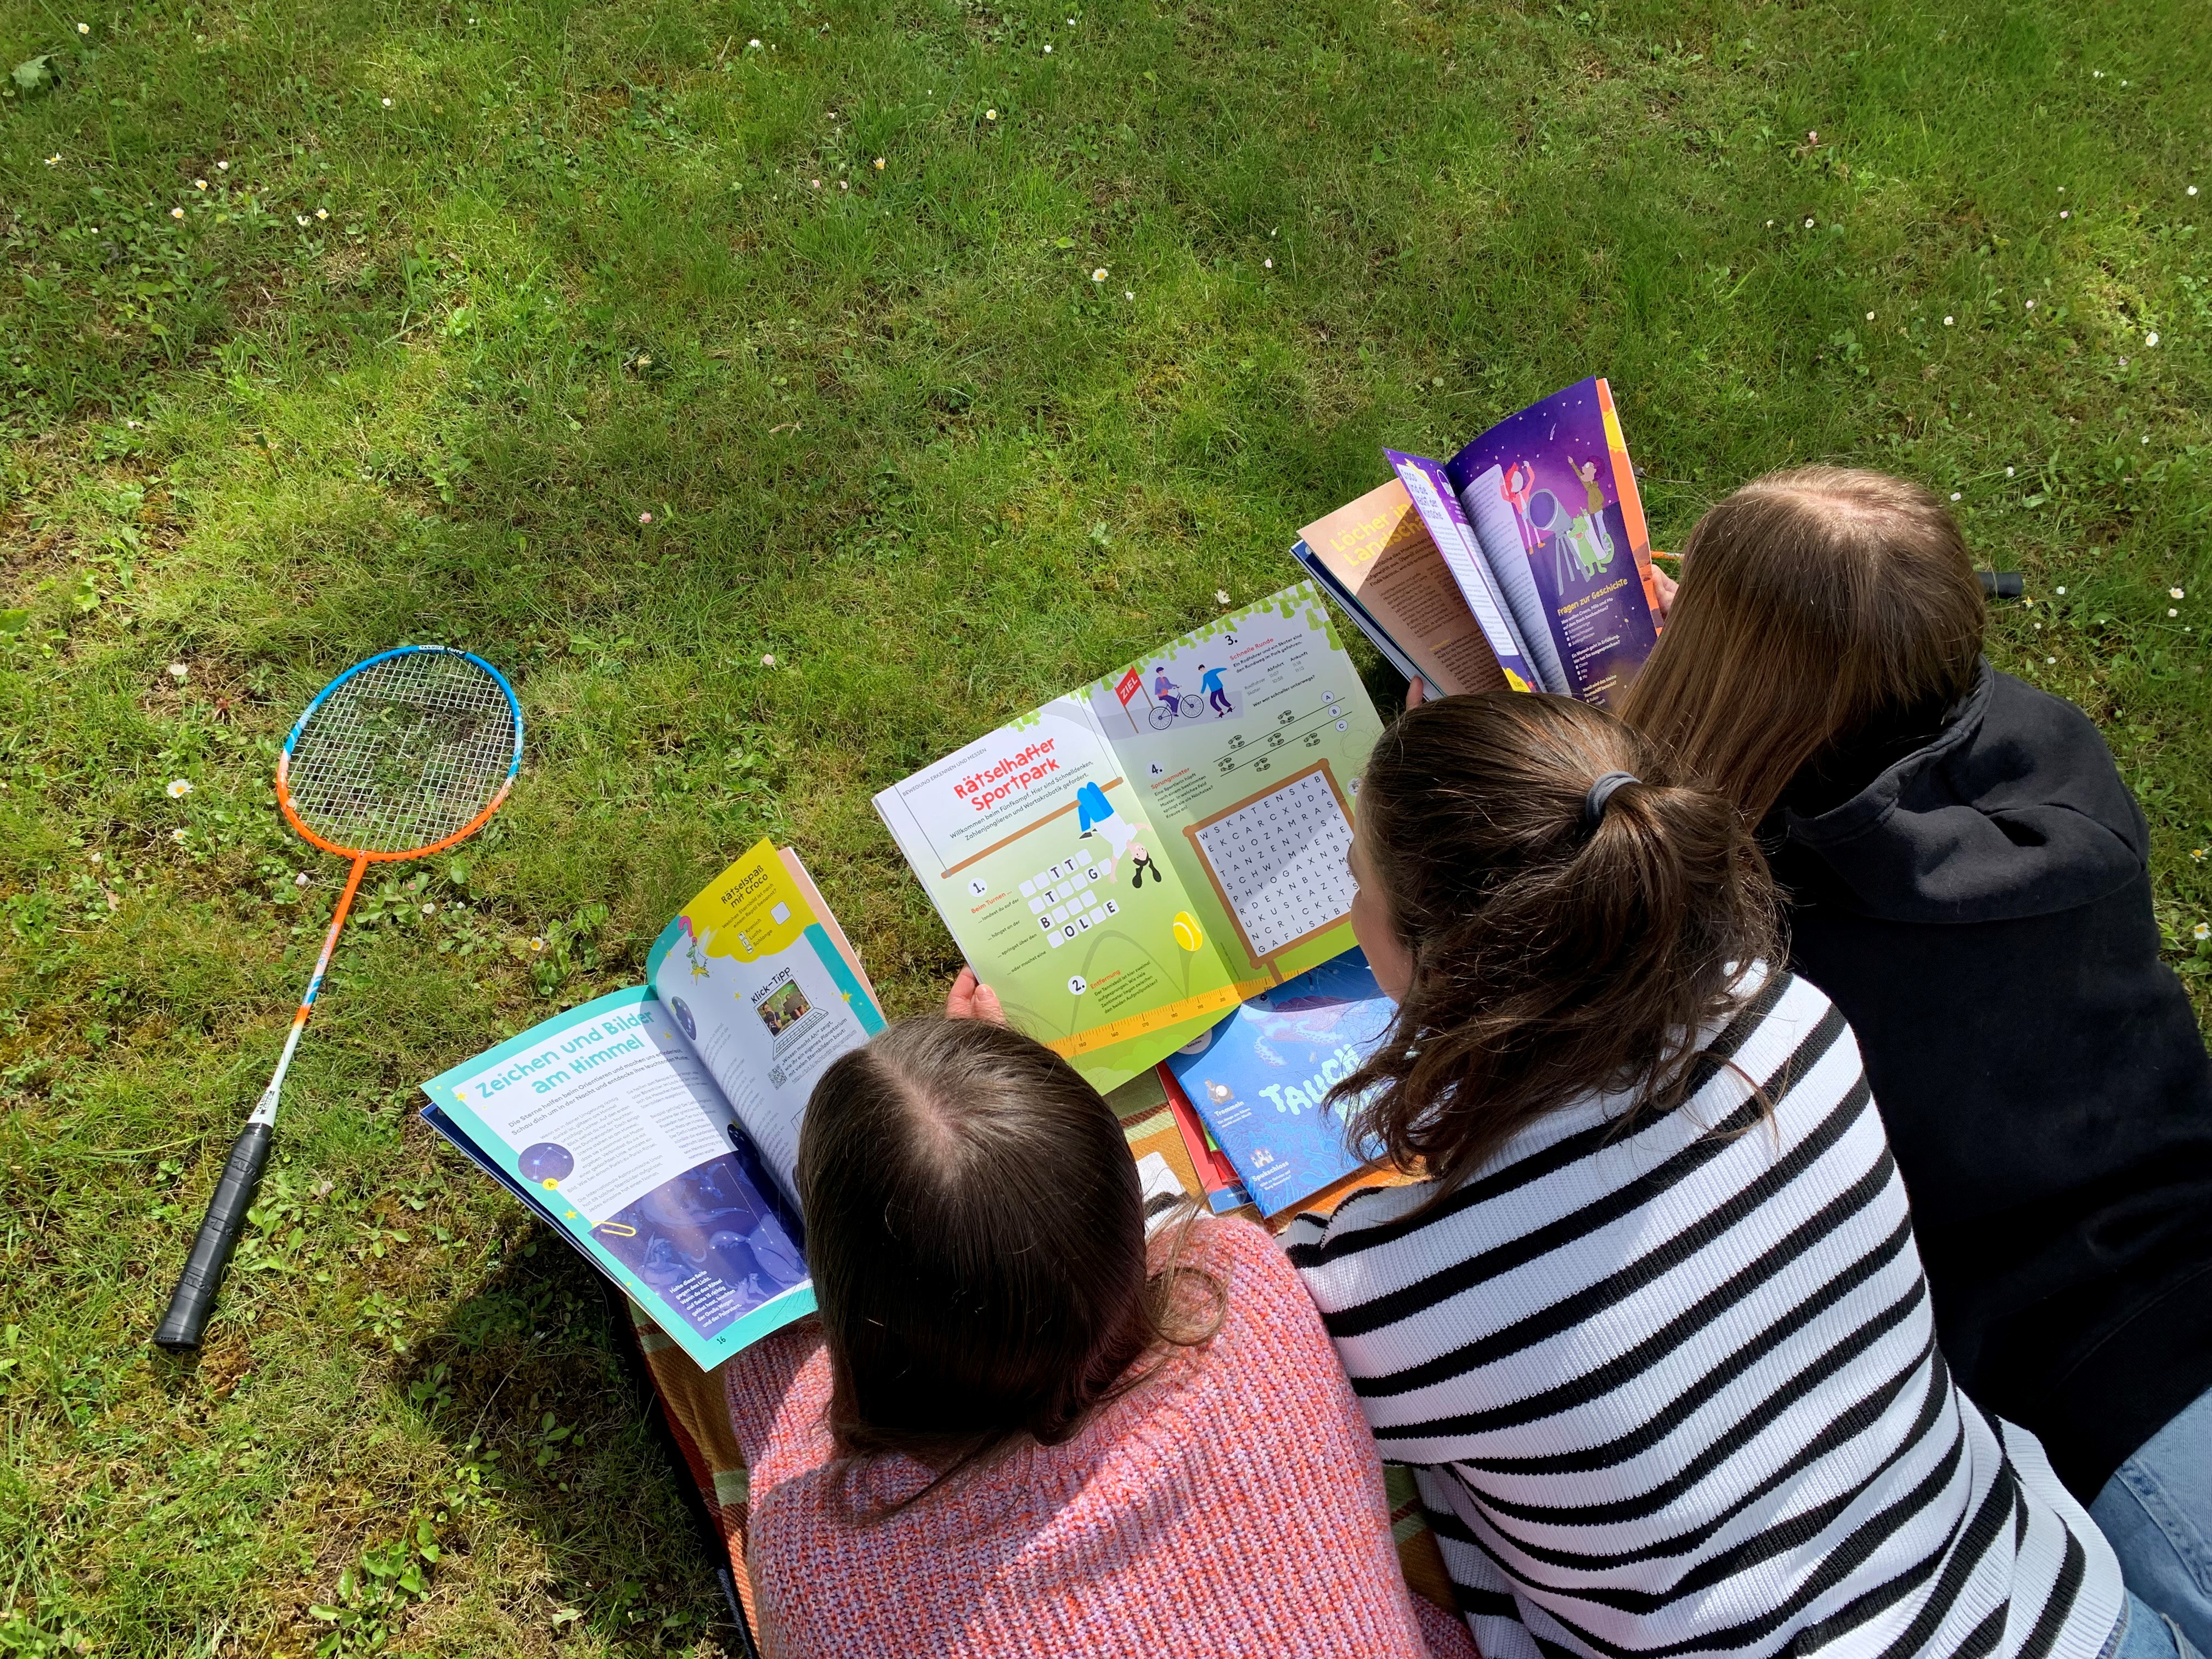 Auf einer Picknickdecke im Park liegen drei Mädchen und lesen in verschiedenen Zeitschriften